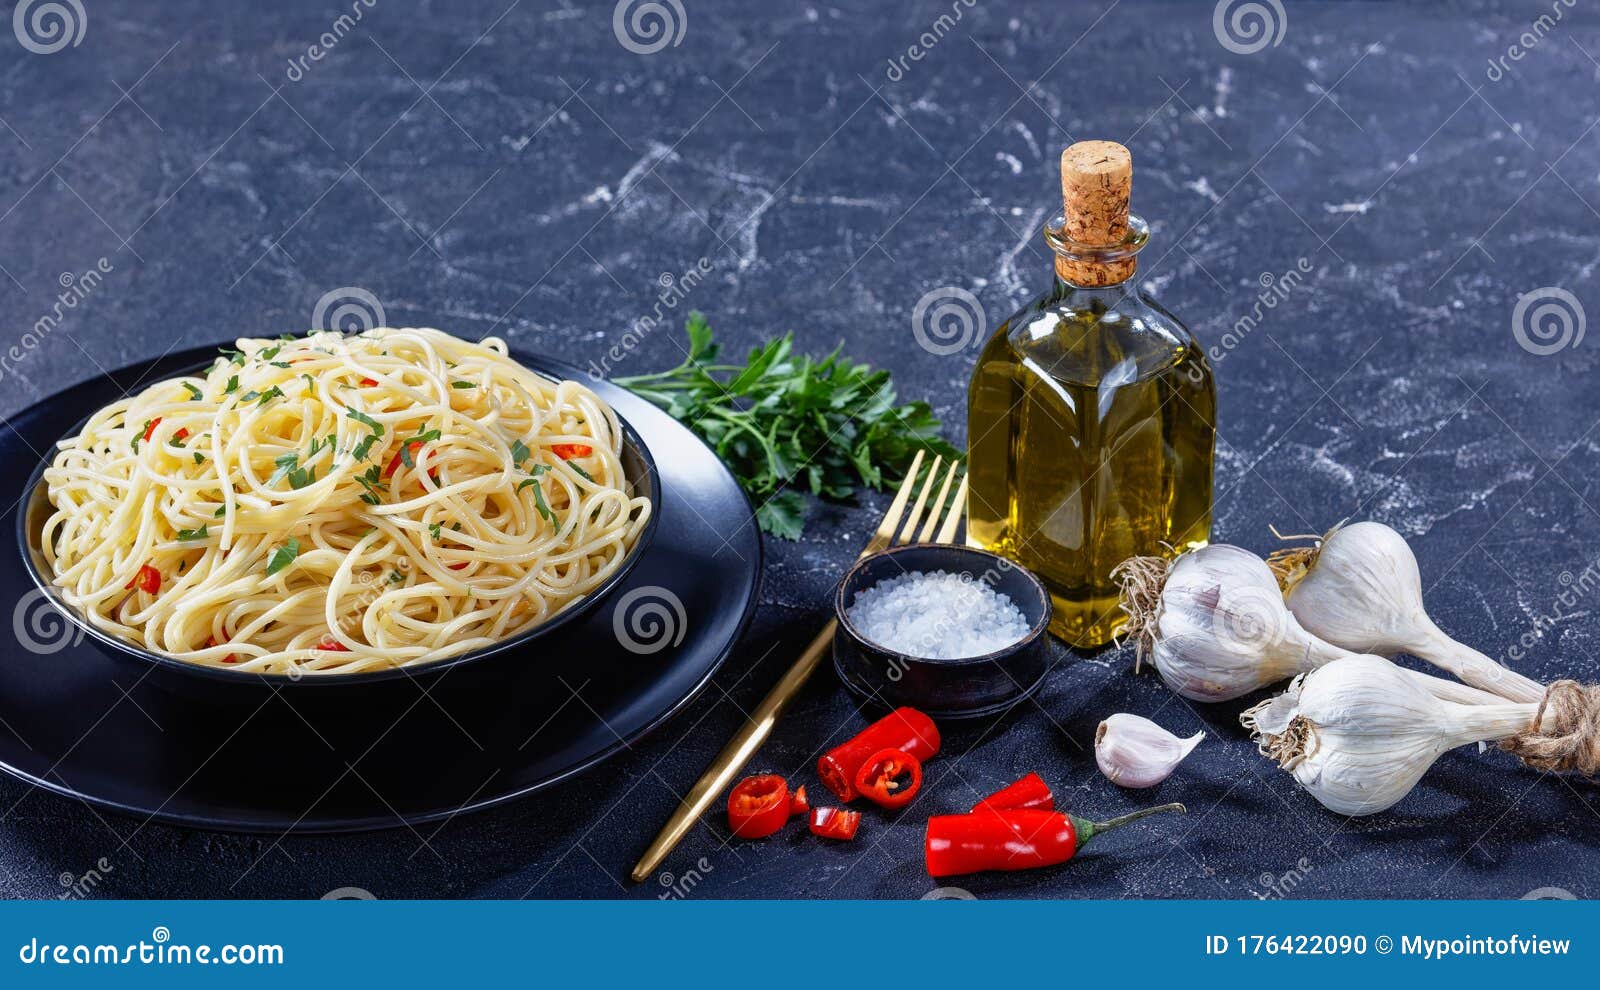 pasta aglio, olio e peperoncino in a bowl